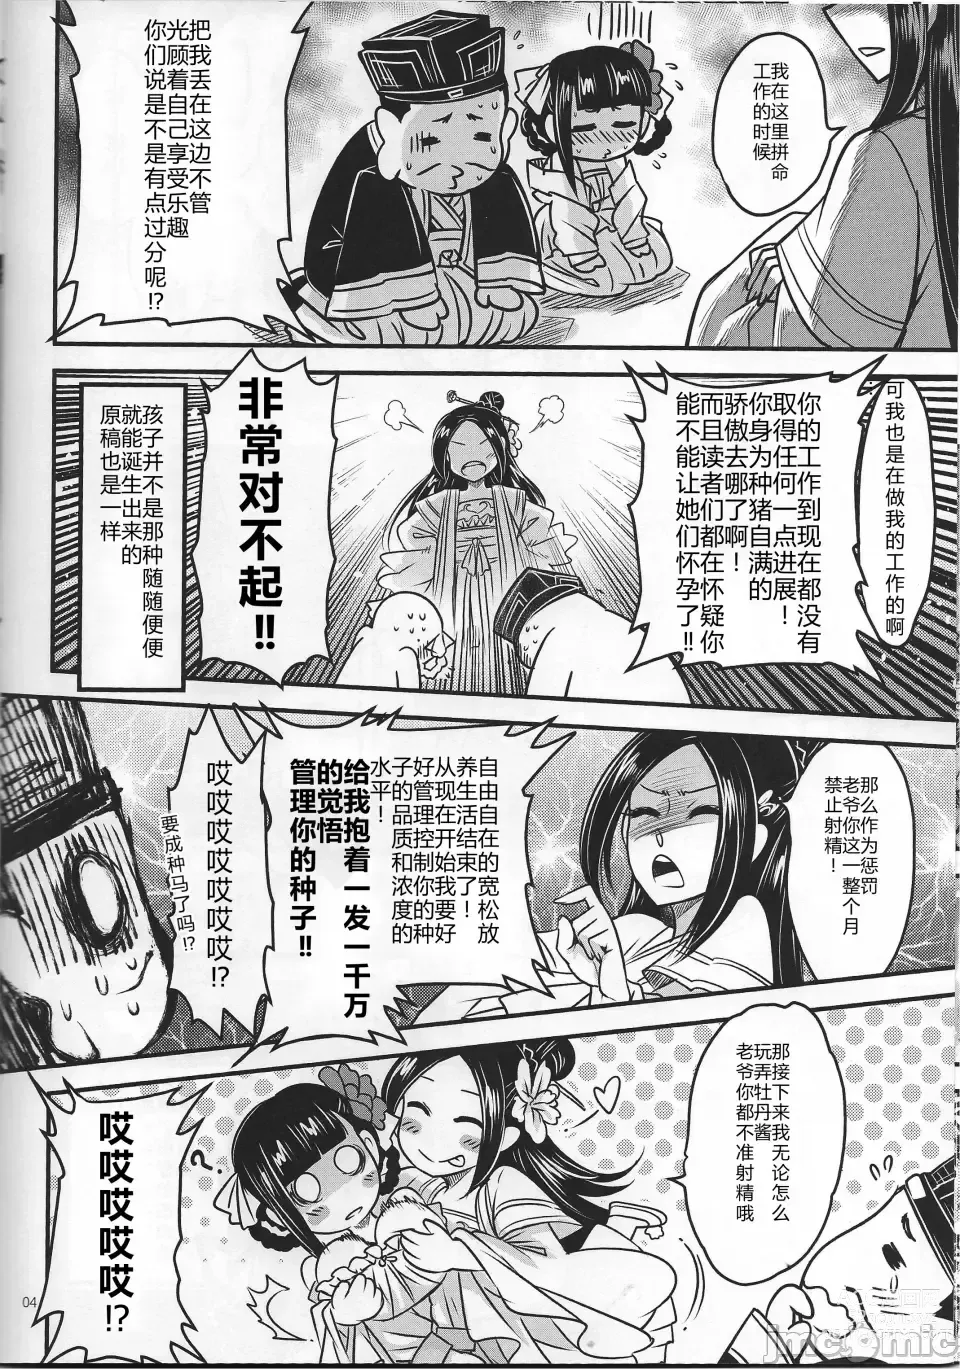 Page 5 of doujinshi Hyakkasou 12 <<Jitsuroku Makyou Hyakkasou Kikou>>